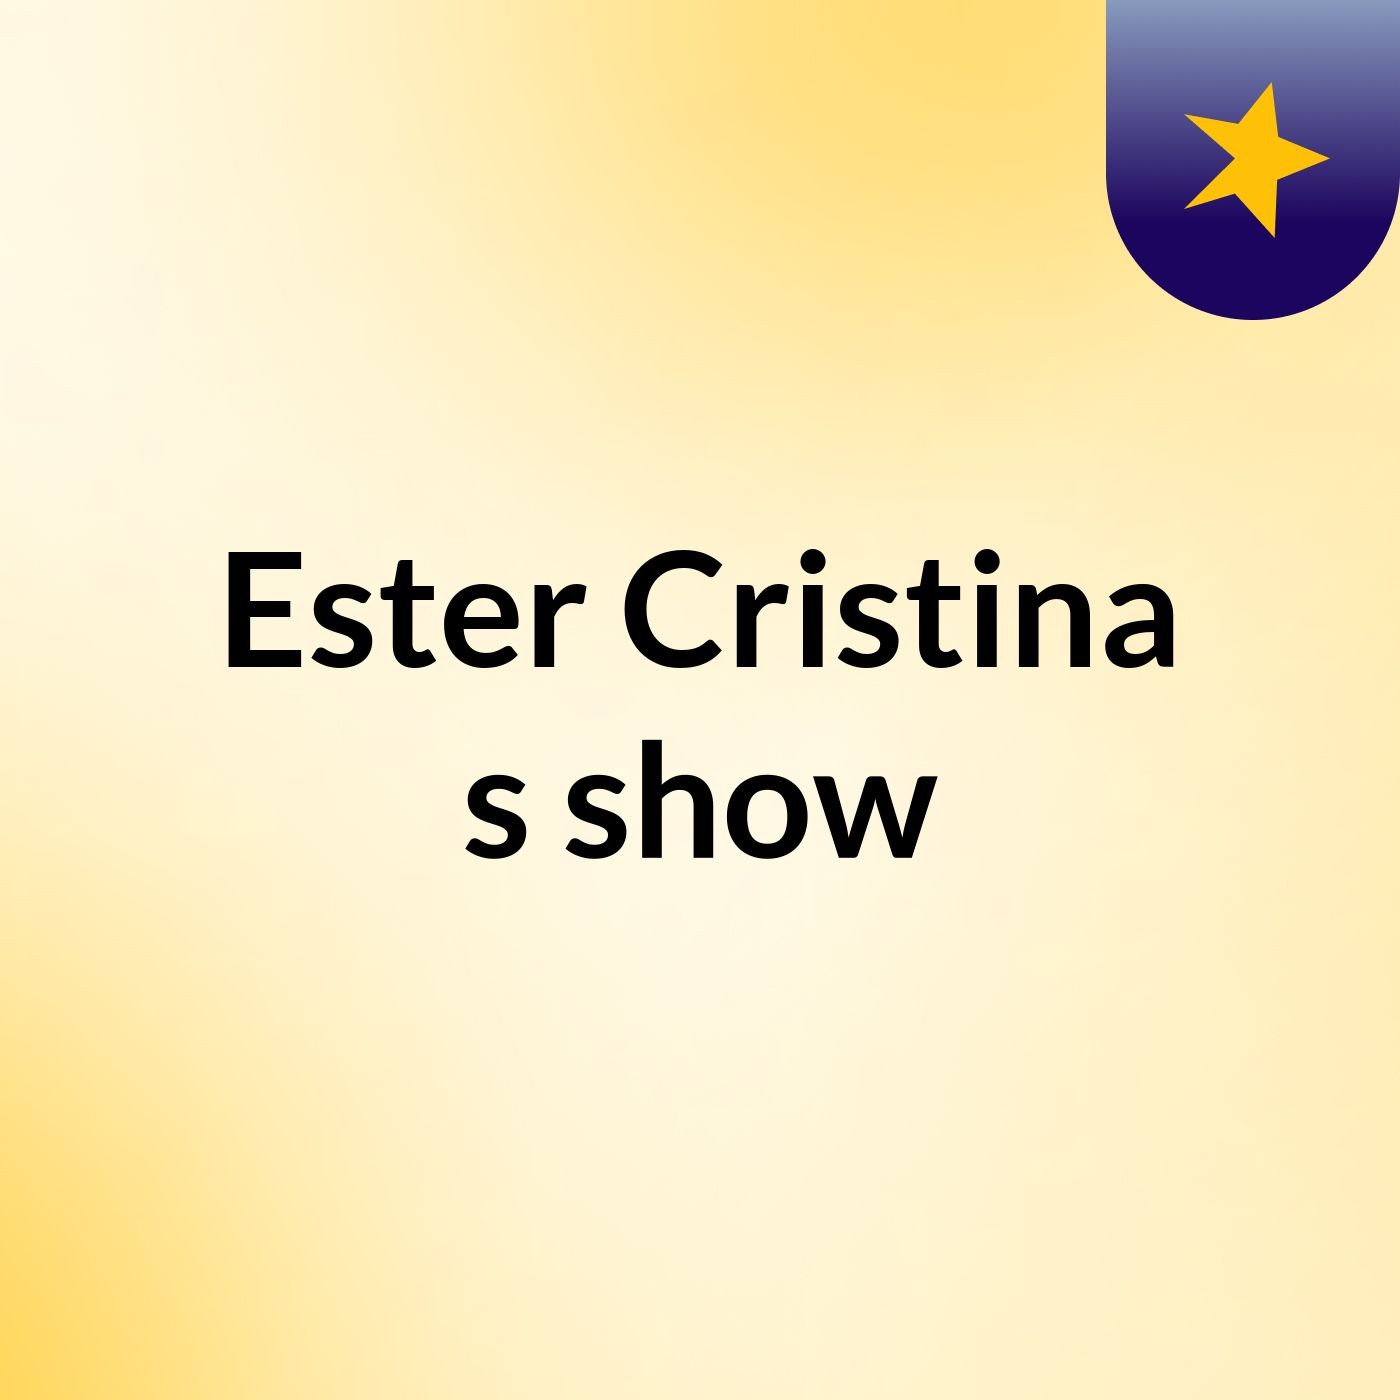 Ester Cristina's show